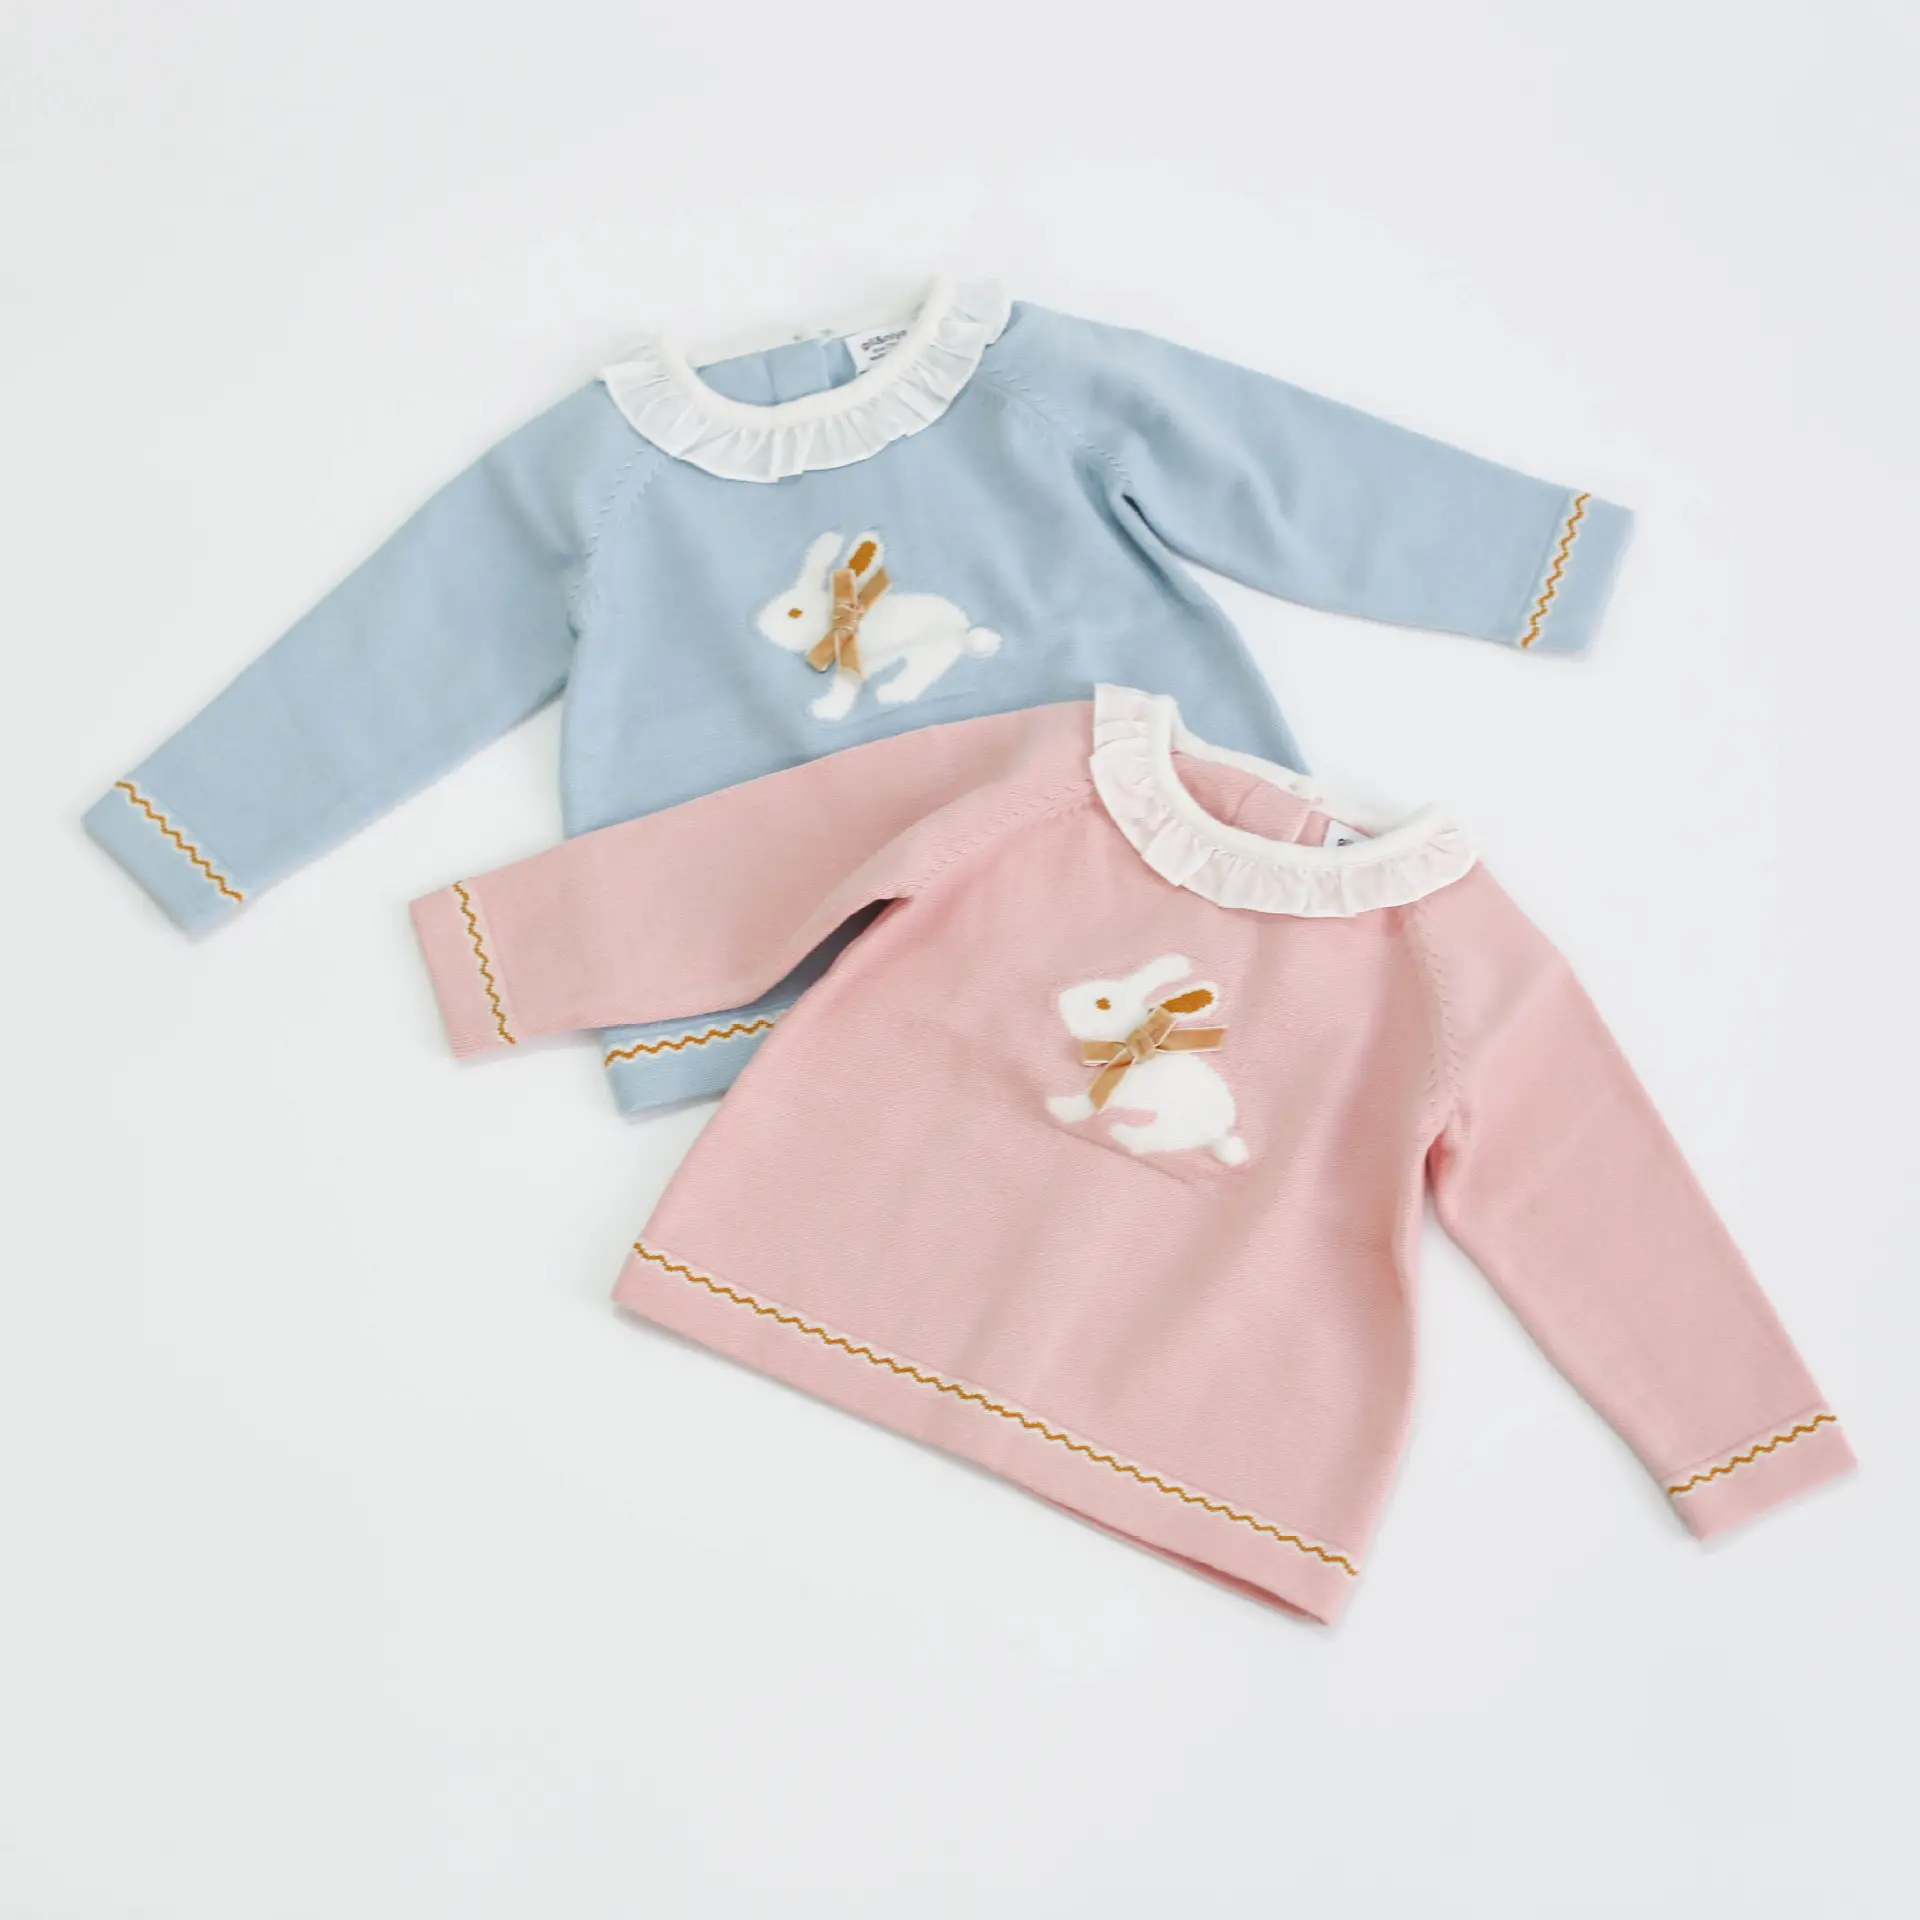 Newborm bebek kazak kızlar için tasarım tavşan ruffles butik çocuk giyim çocuk kazak